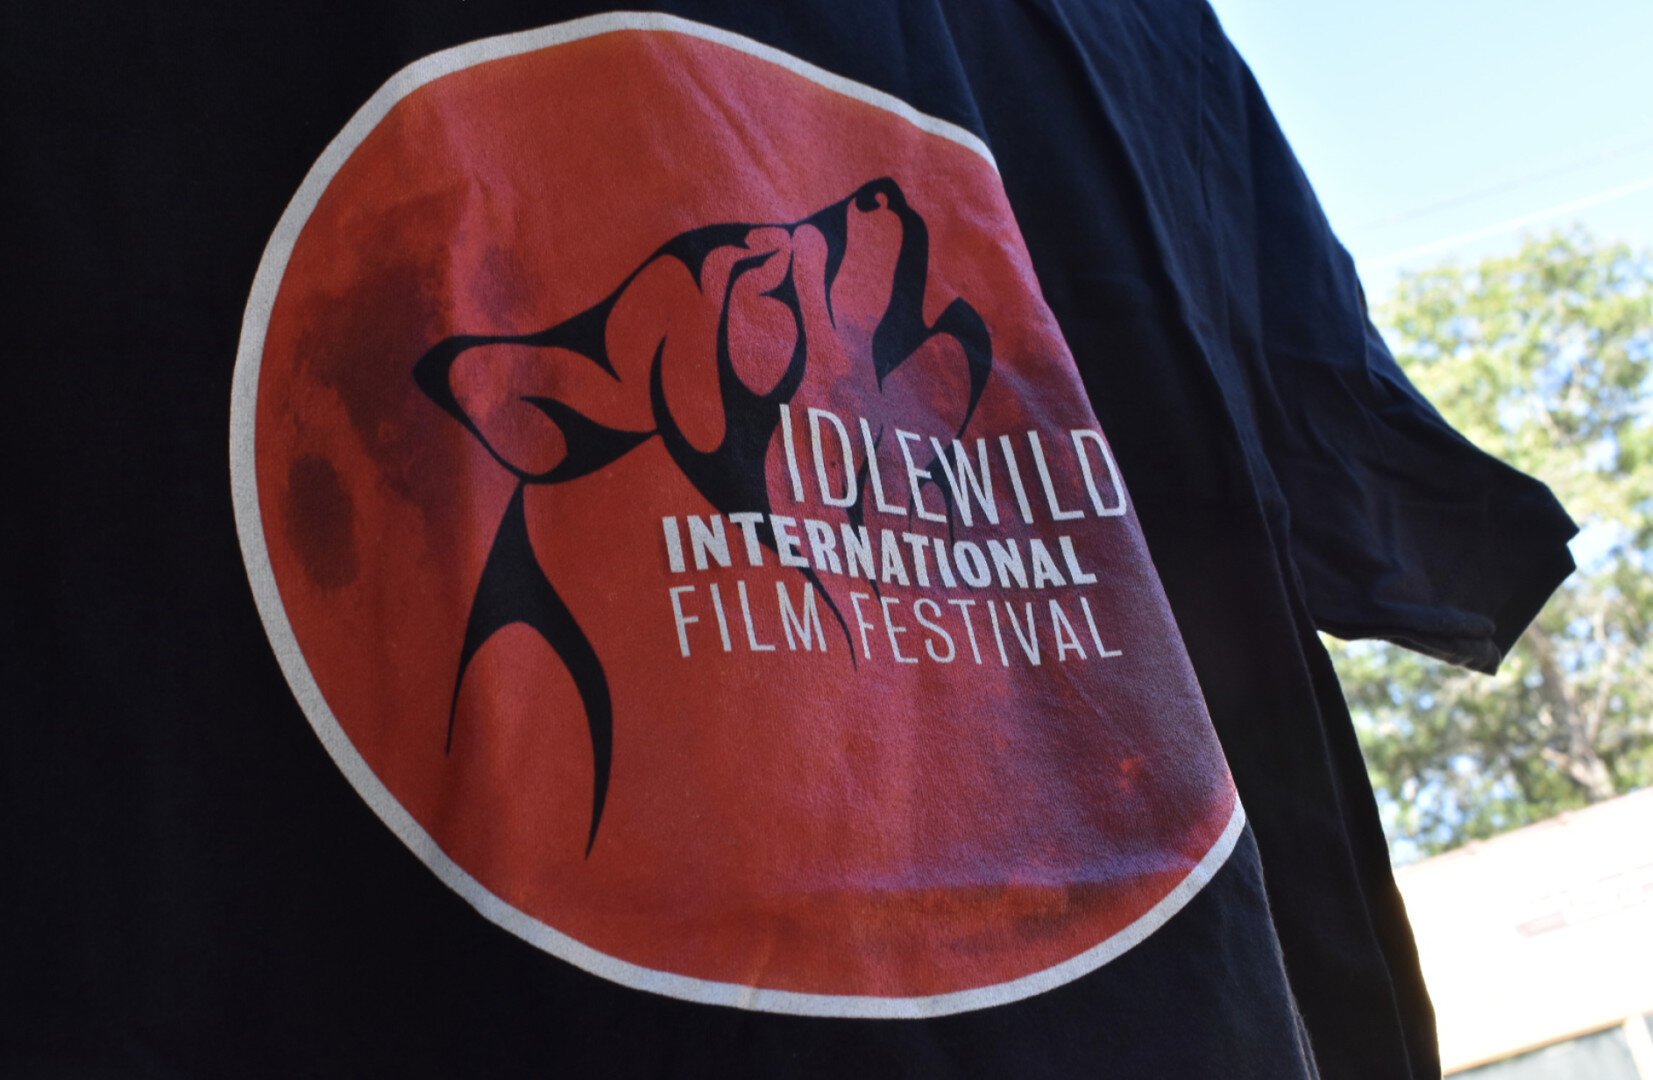 Courtesy Idlewild International Film Festival.